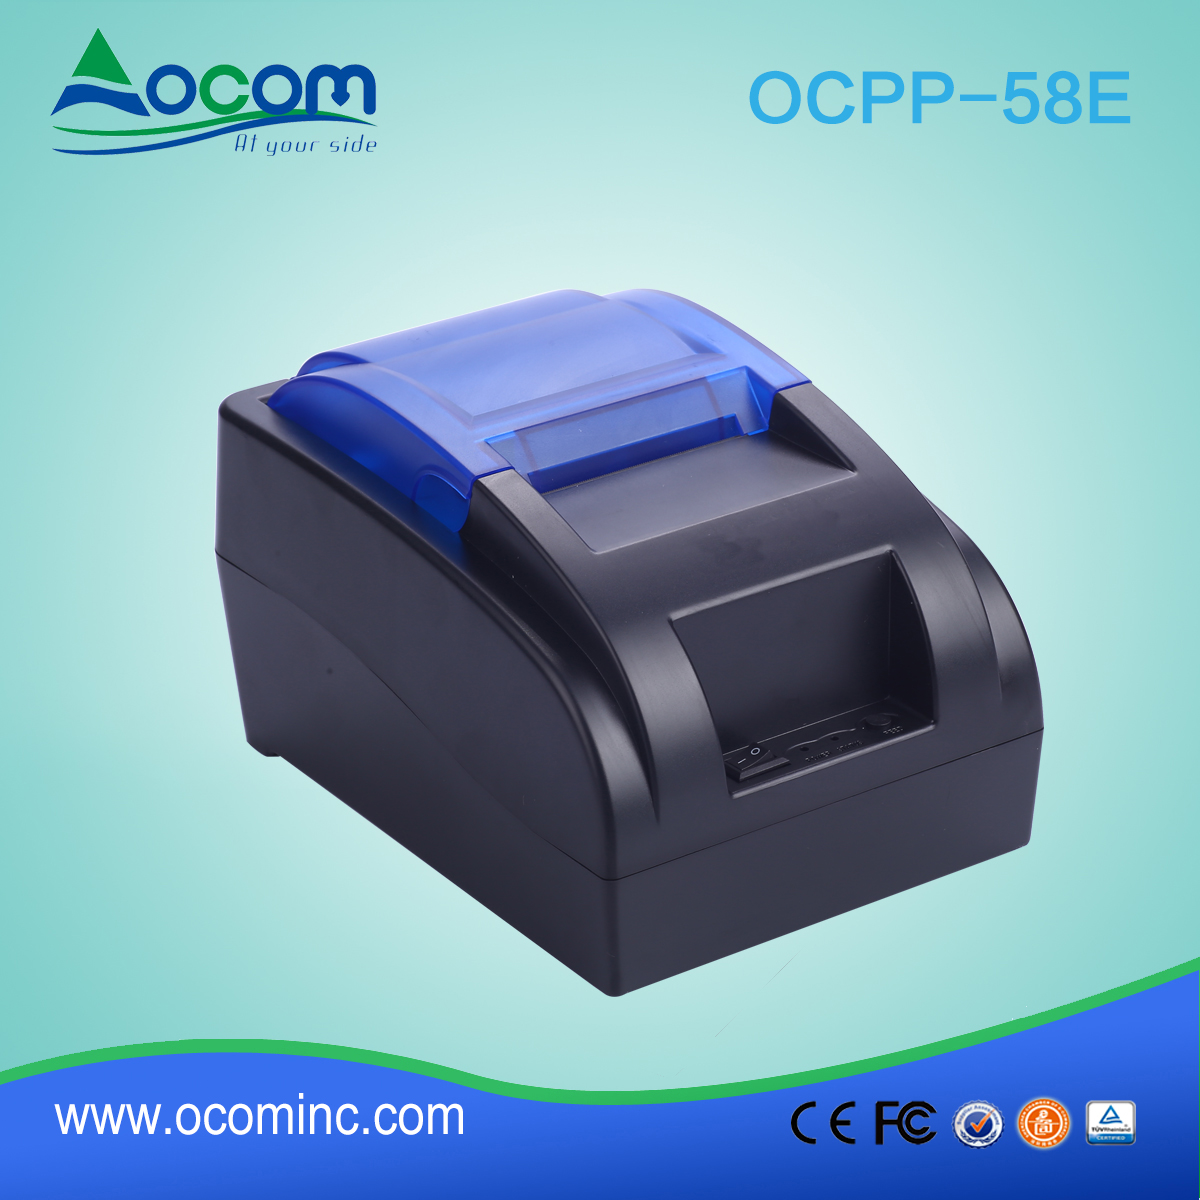 OCPP-58E-China fabricou uma impressora POS de baixo custo de 58 mm com opção Bluetooth ou WIFI